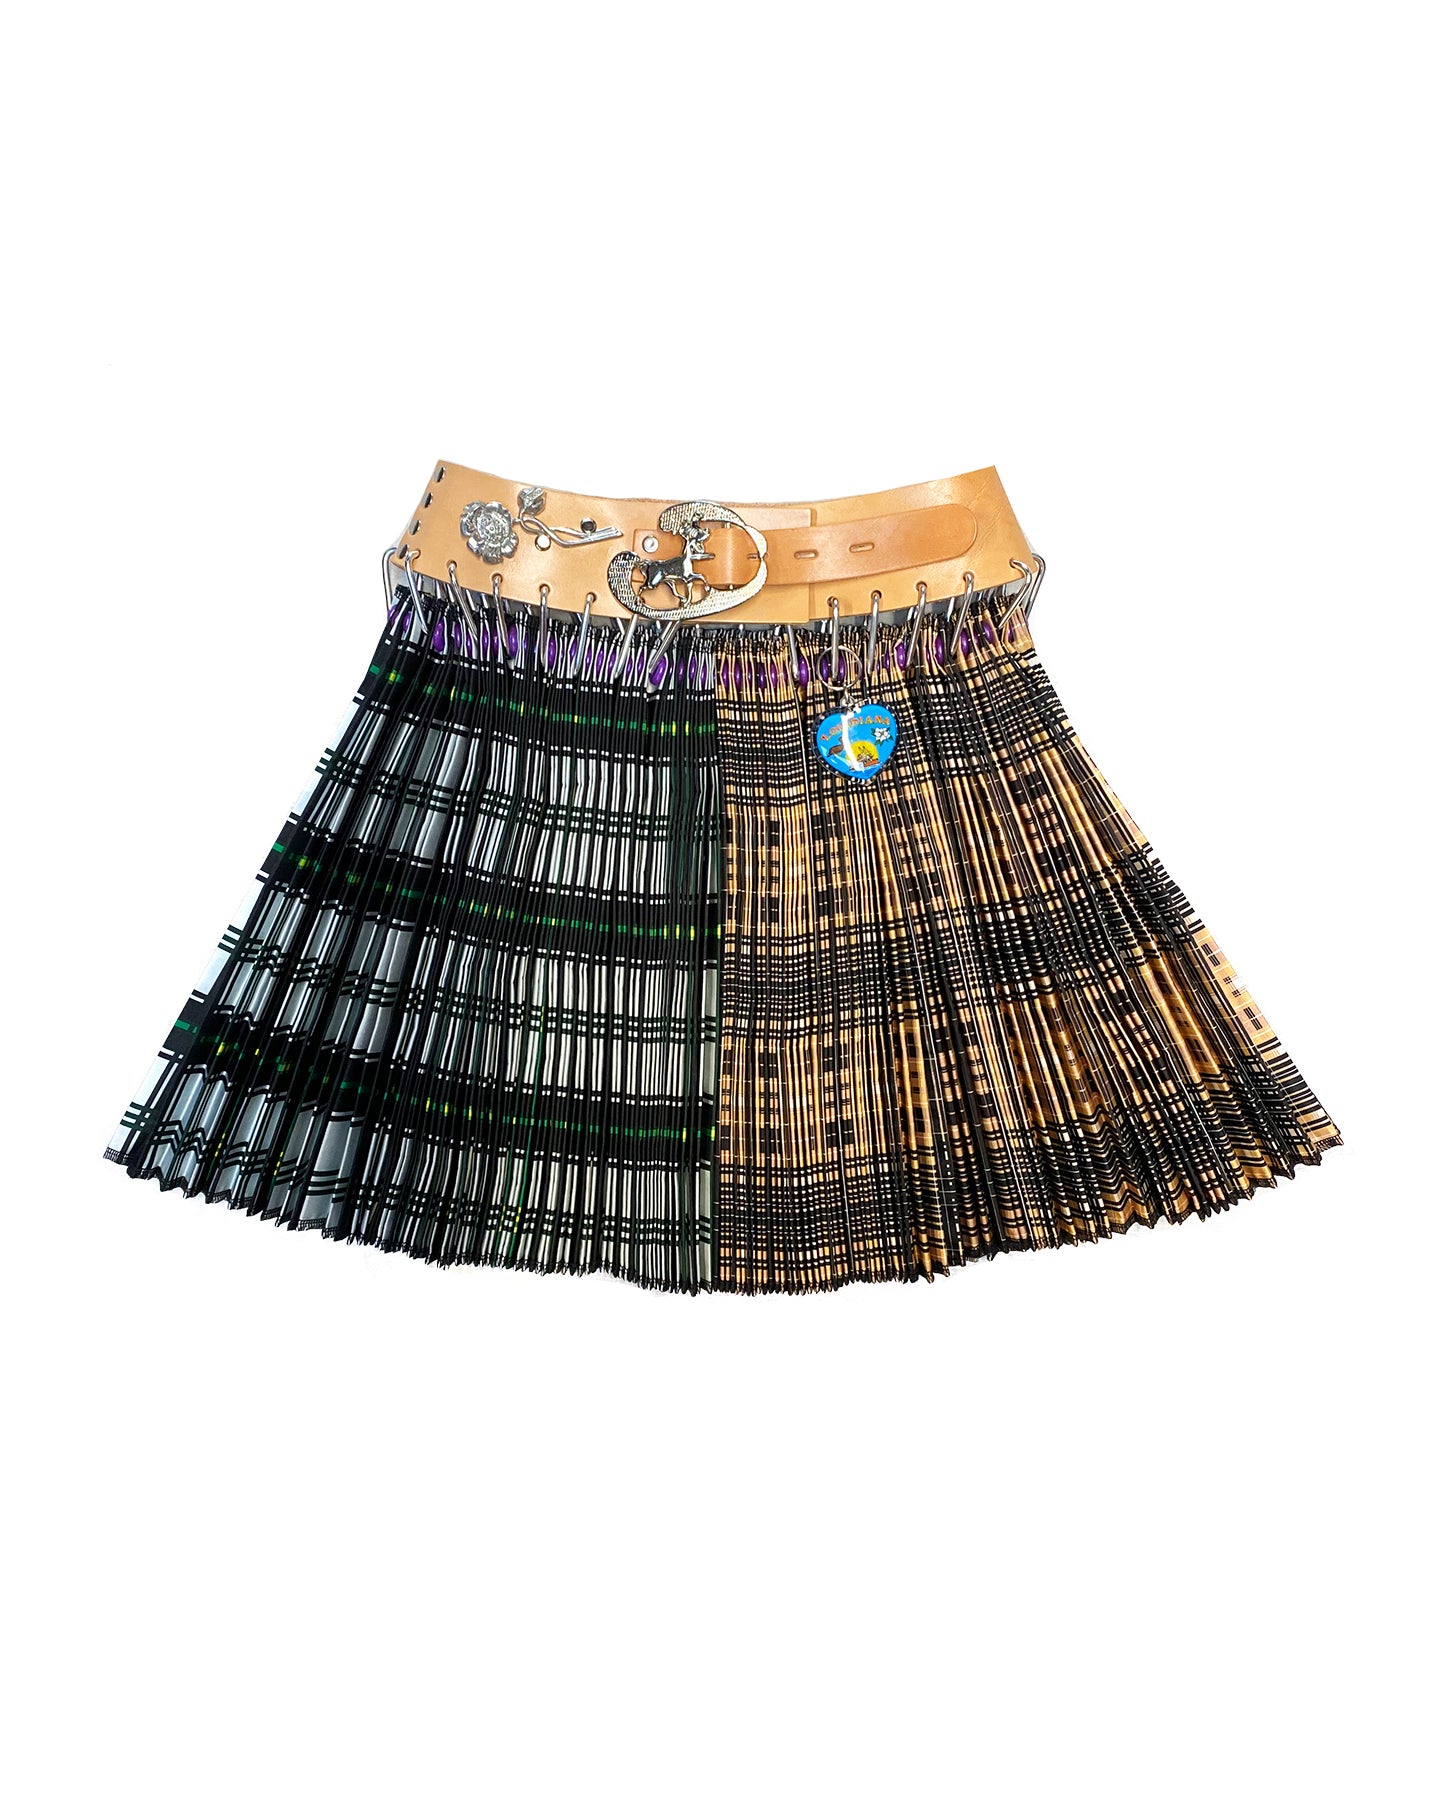 Split Plaid Mini Skirt with Tan Belt